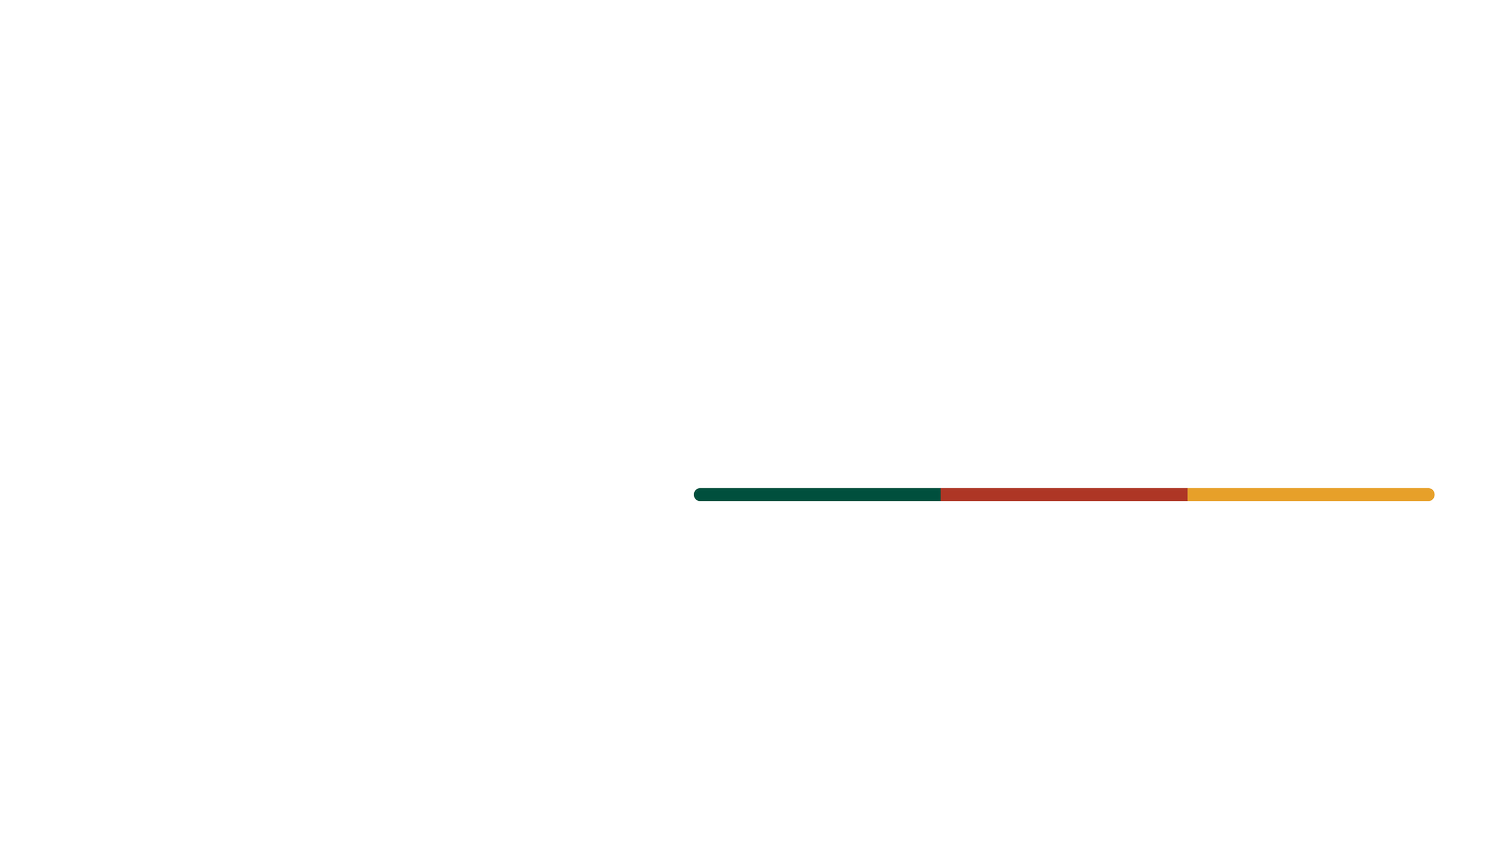 IARS